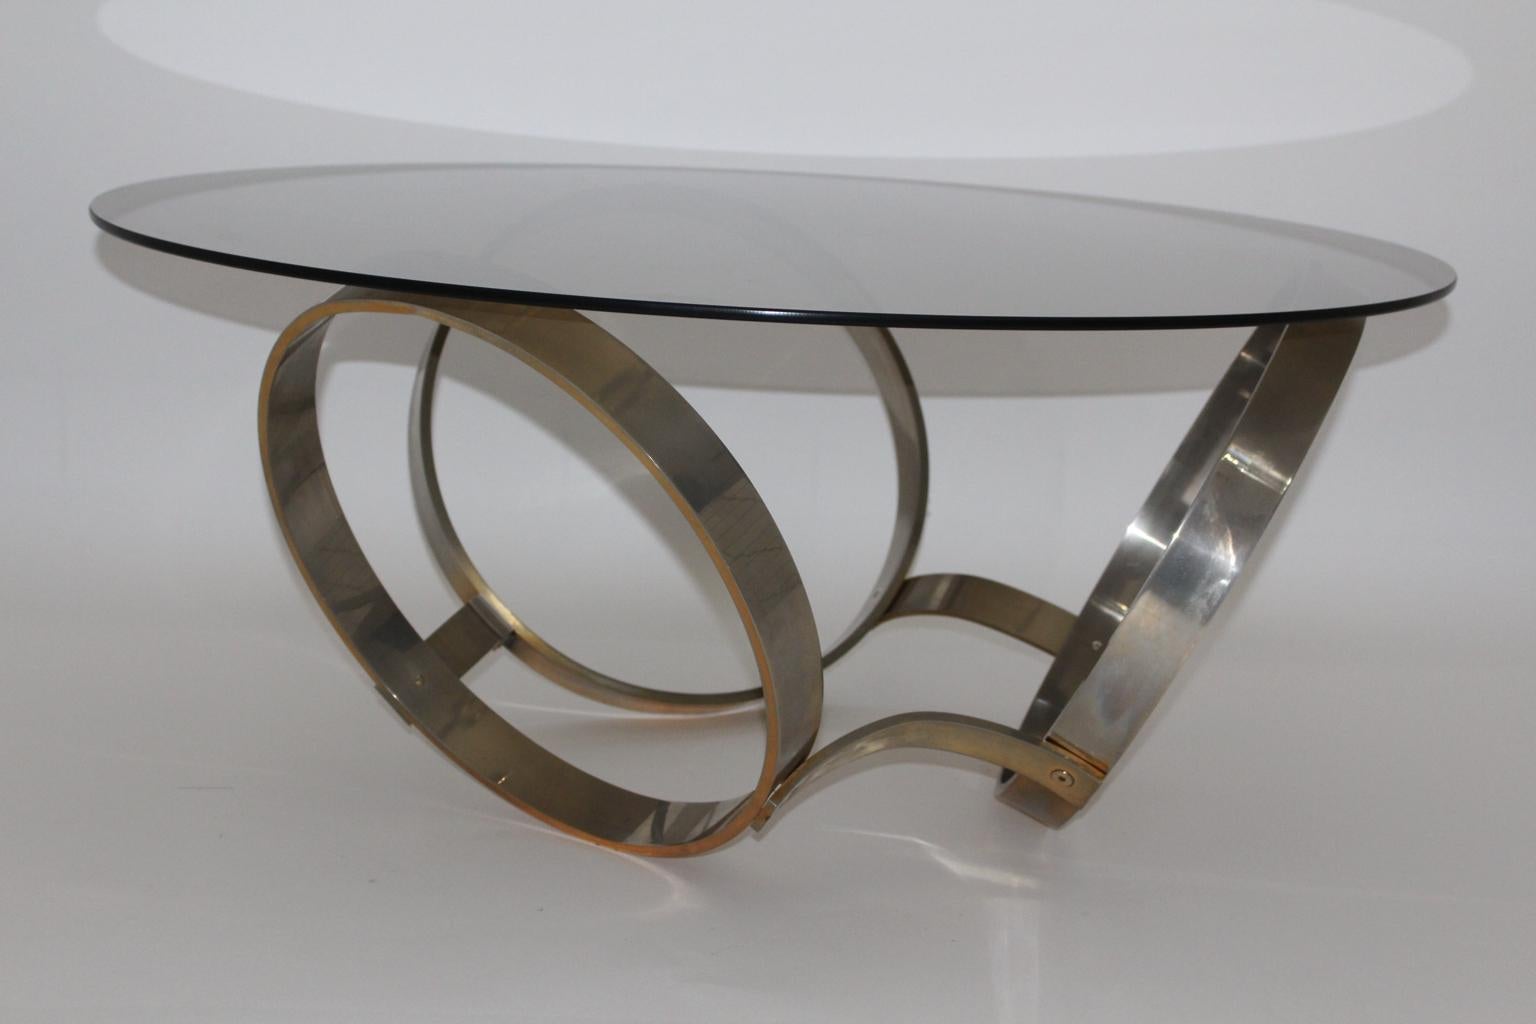 Table basse ou table de canapé vintage Space Age en métal plaqué laiton et plaque de verre fumé vers 1970.
La base en métal plaqué laiton présente trois éléments en forme d'anneau comme la trinité.
Au fil des années et des âges, la base métallique